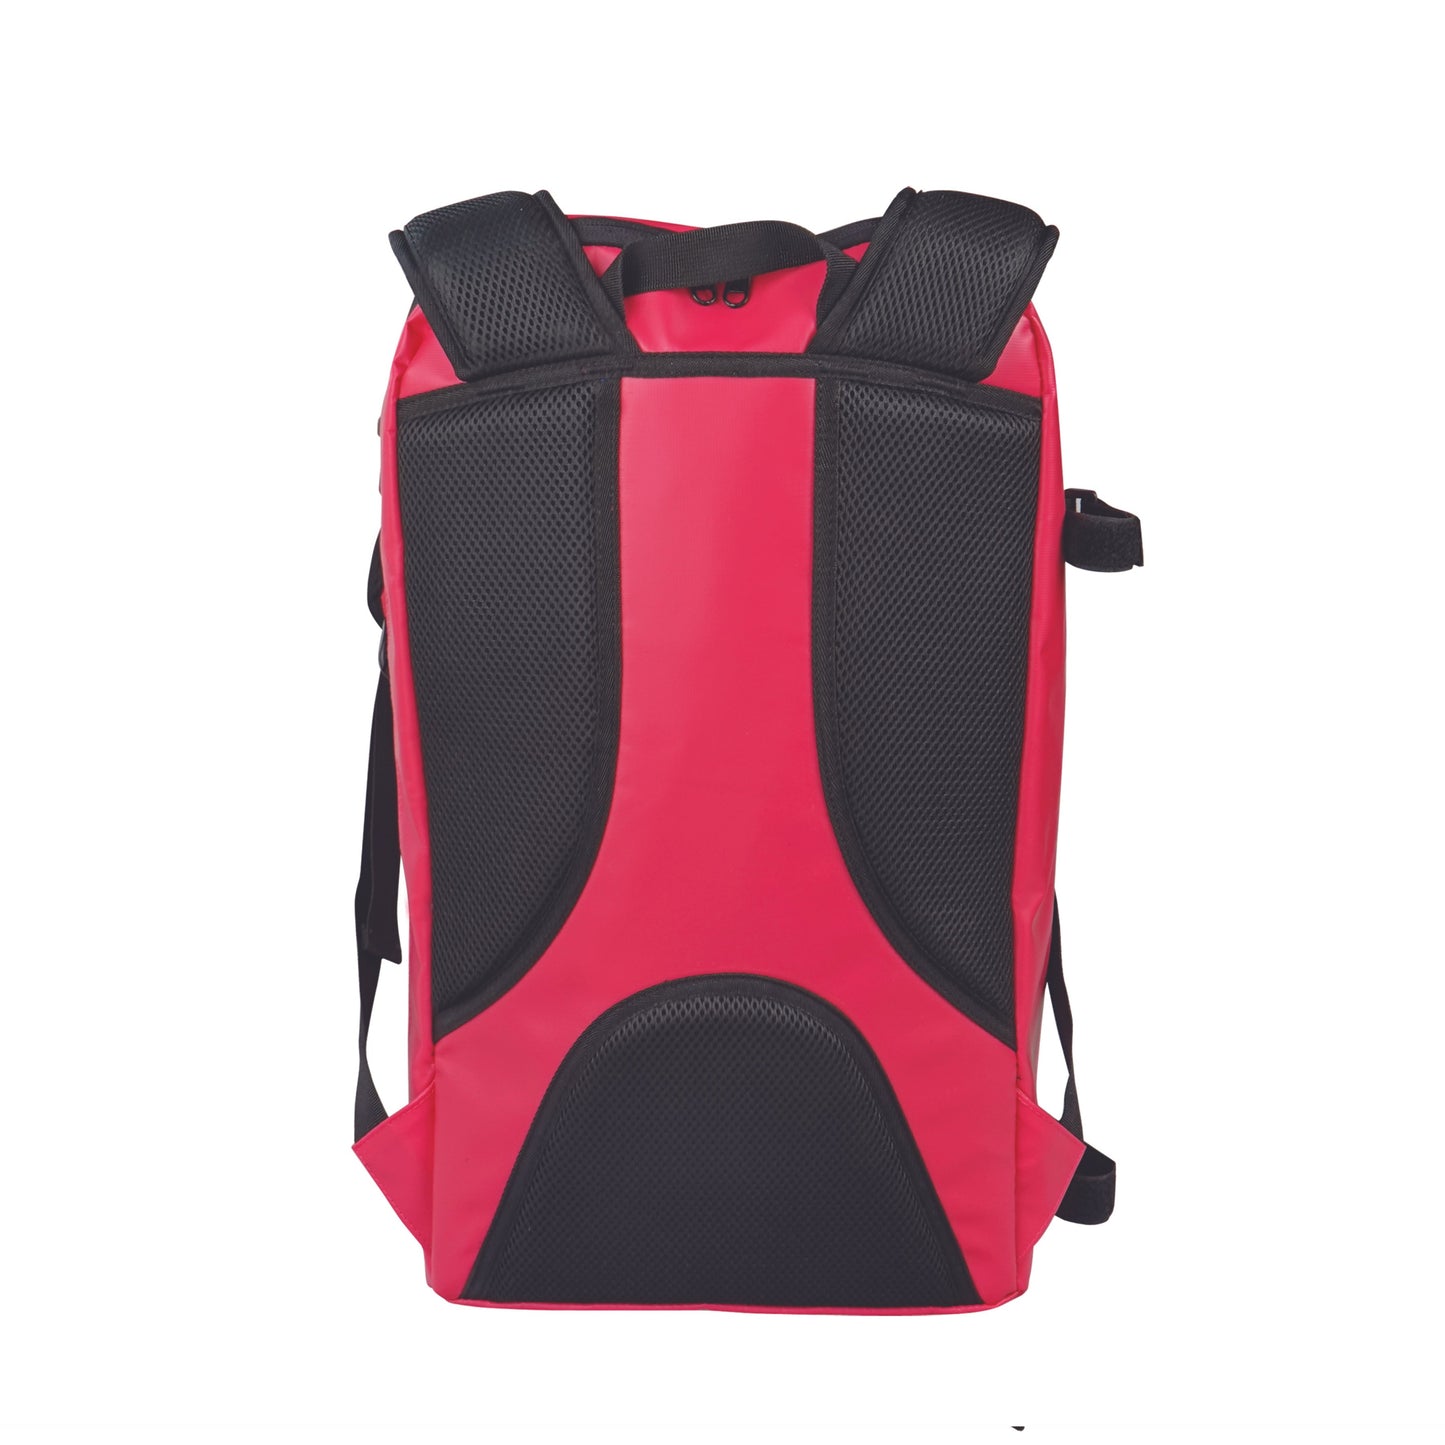 Ranger Backpack - Pink